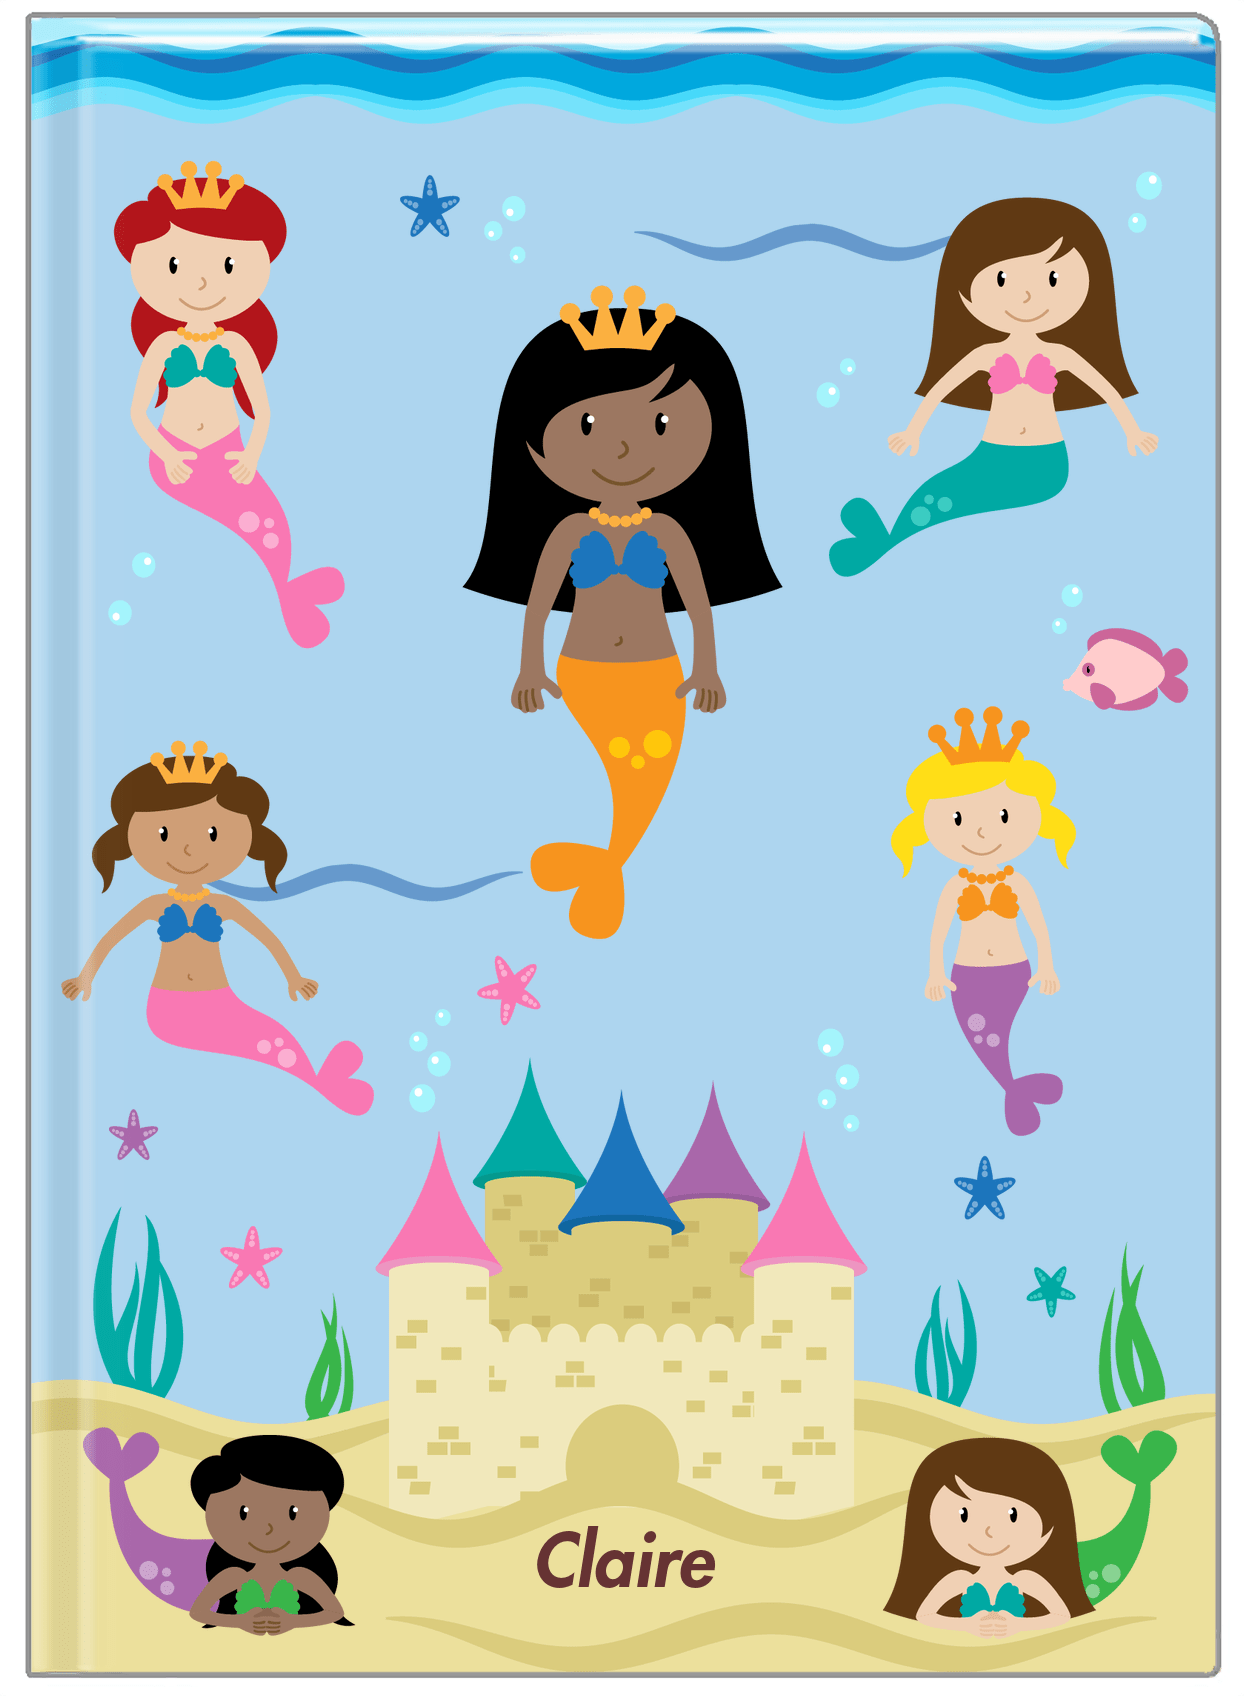 Personalized Mermaid Journal II - Blue Background - Black Mermaid II - Front View